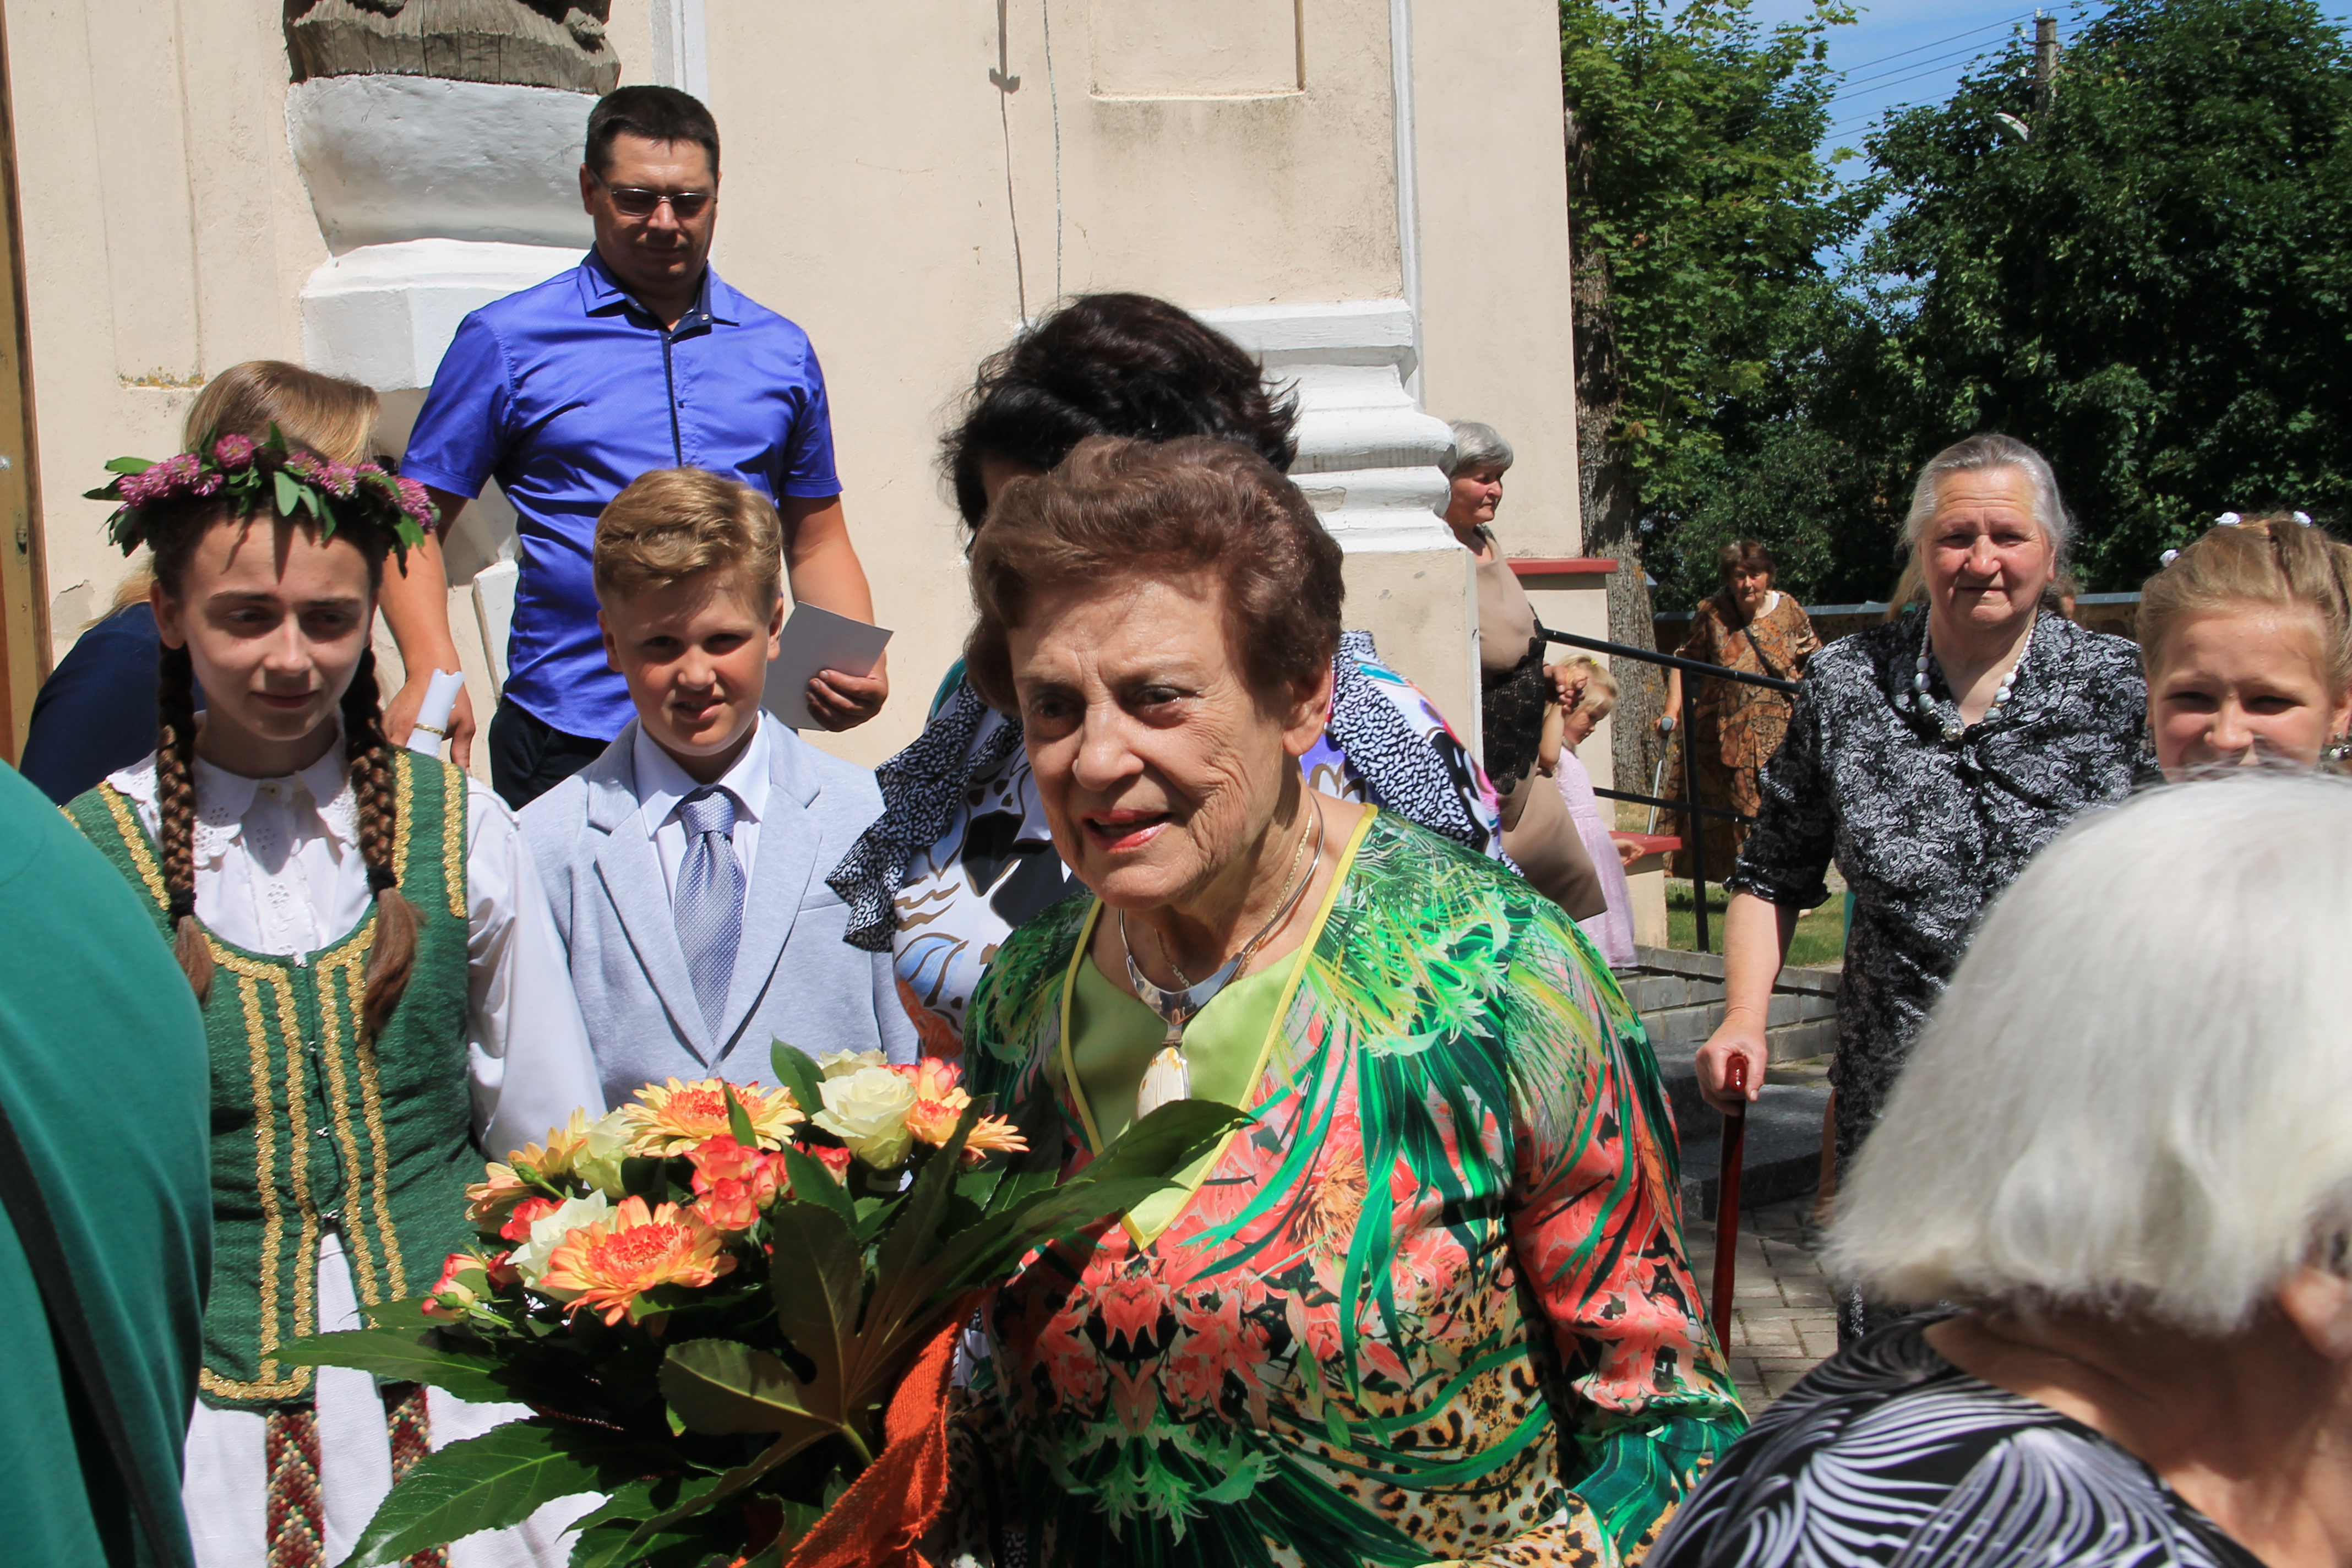 Žymi lietuvių išeivijos veikėja, kultūrininkė Marija Aliodija Bareikaitė –Remienė švenčia jubiliejų